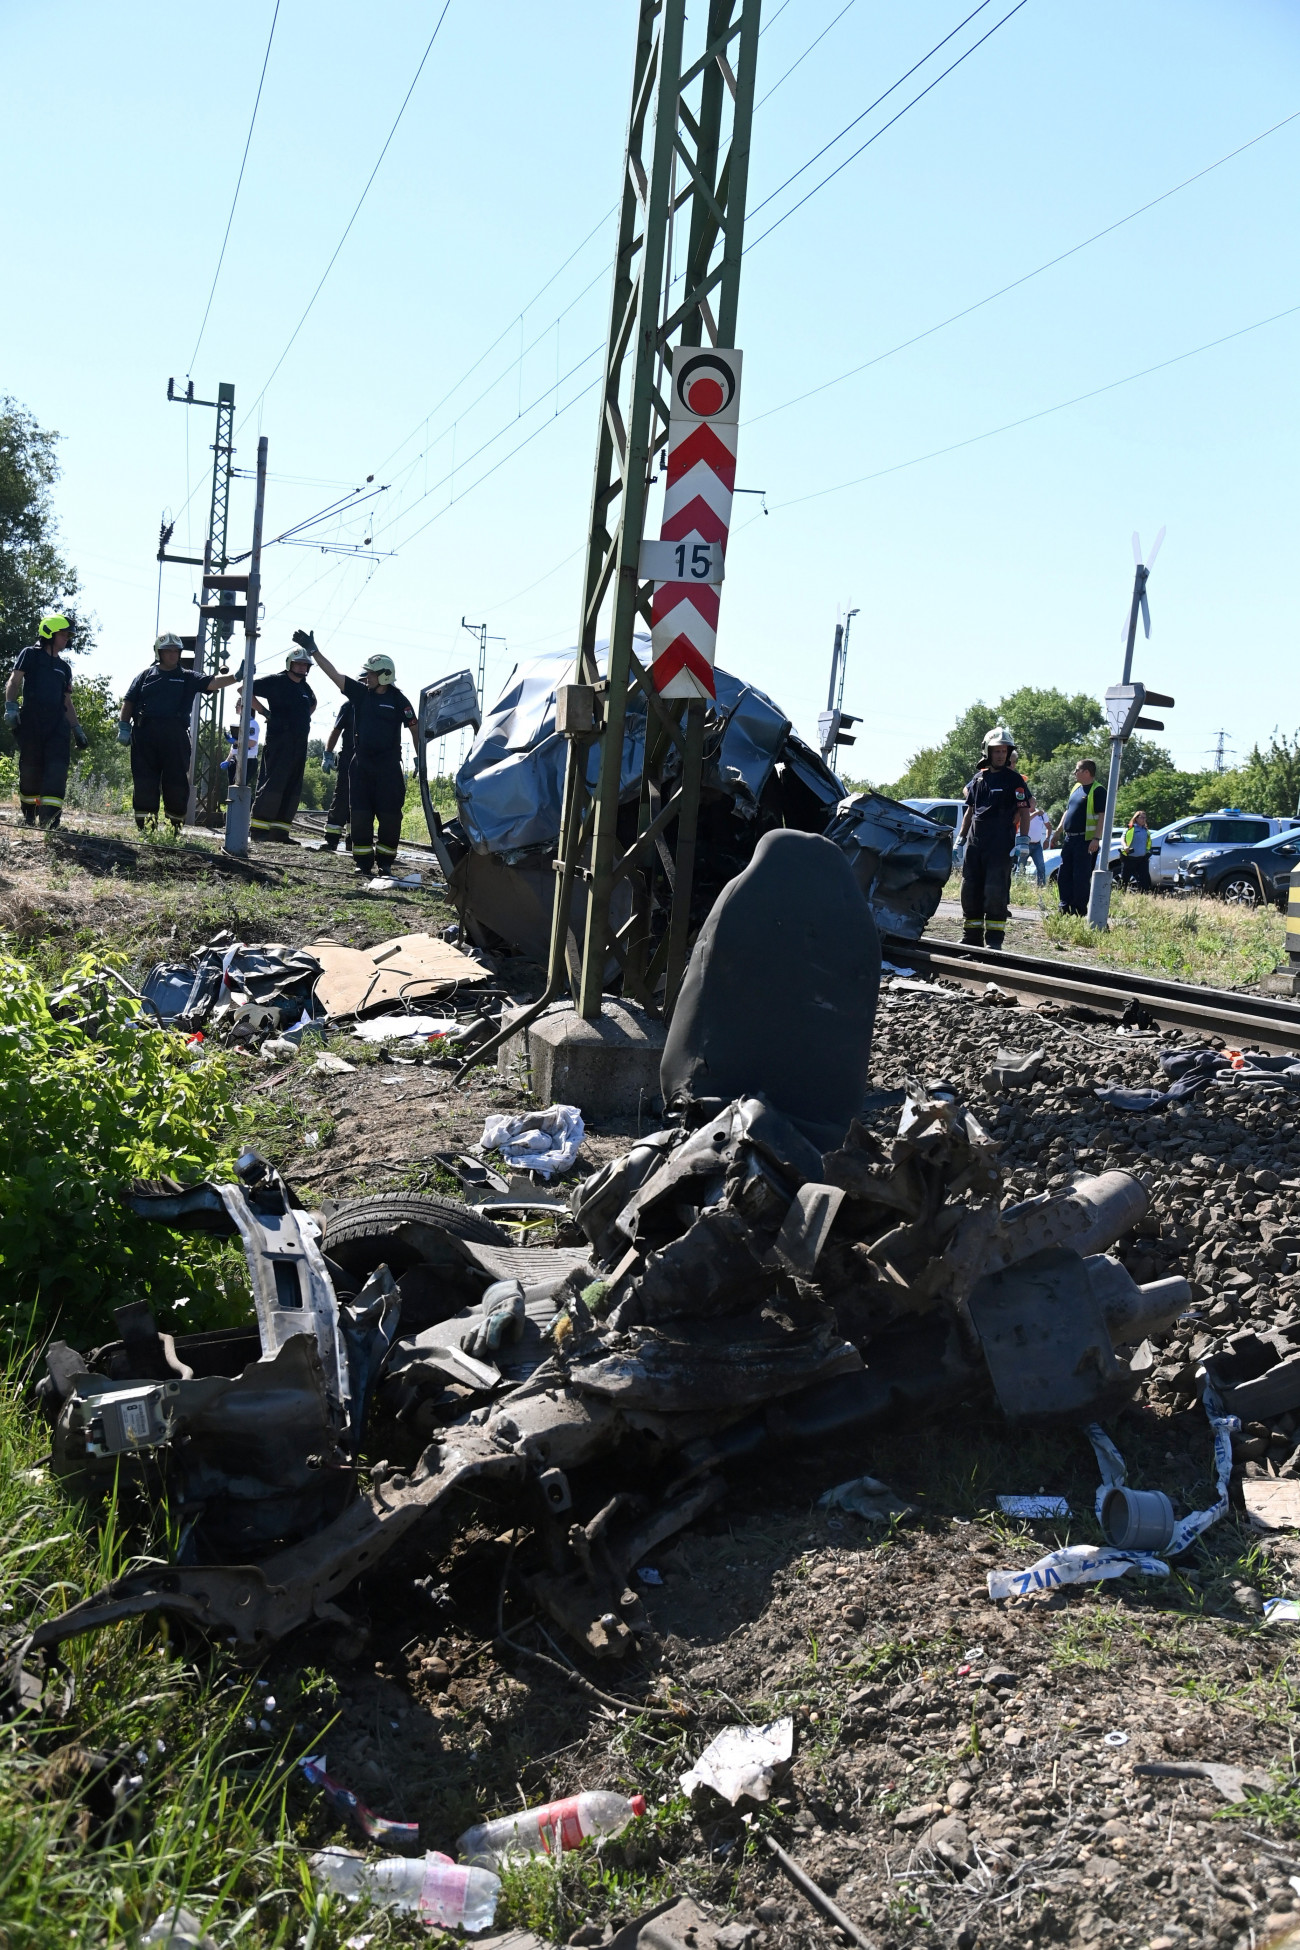 Cegléd, 2022. június 13.
Összeroncsolódott kisteherautó Cegléden 2022. június 13-án. A gépjármű a Dohány utcai vasúti átjáróban összeütközött a Szegedről a Nyugati pályaudvarra tartó Torontál InterCity vonattal, 17 éves sofőrje a helyszínen meghalt. A vonaton nem sérült meg senki, a vasúti átjáróban a fénysorompó jól működött, piros jelzést mutatott.
MTI/Mihádák Zoltán